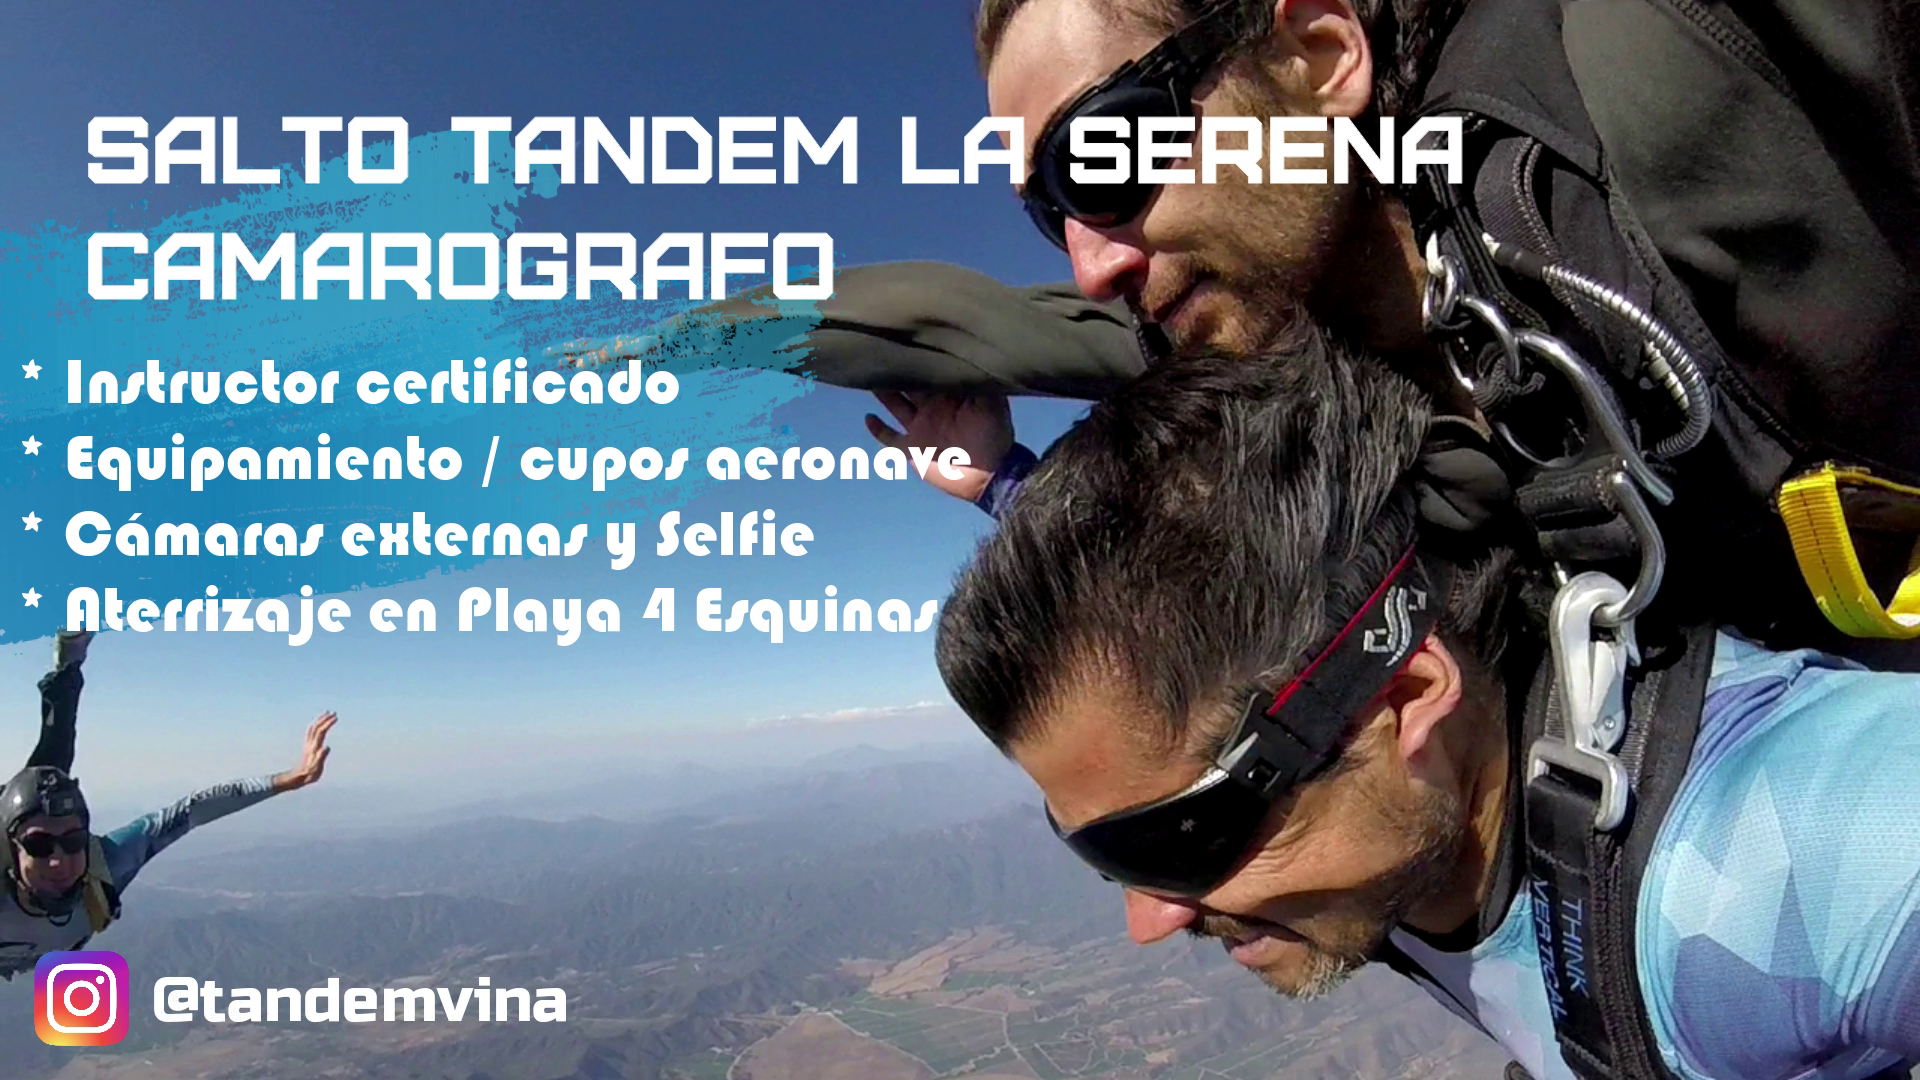 Salta de un avion en paracaidas: Salto tandem con video camarografo externo en Aeropuerto La Serena, IV Region, Chile - Skydive Viña